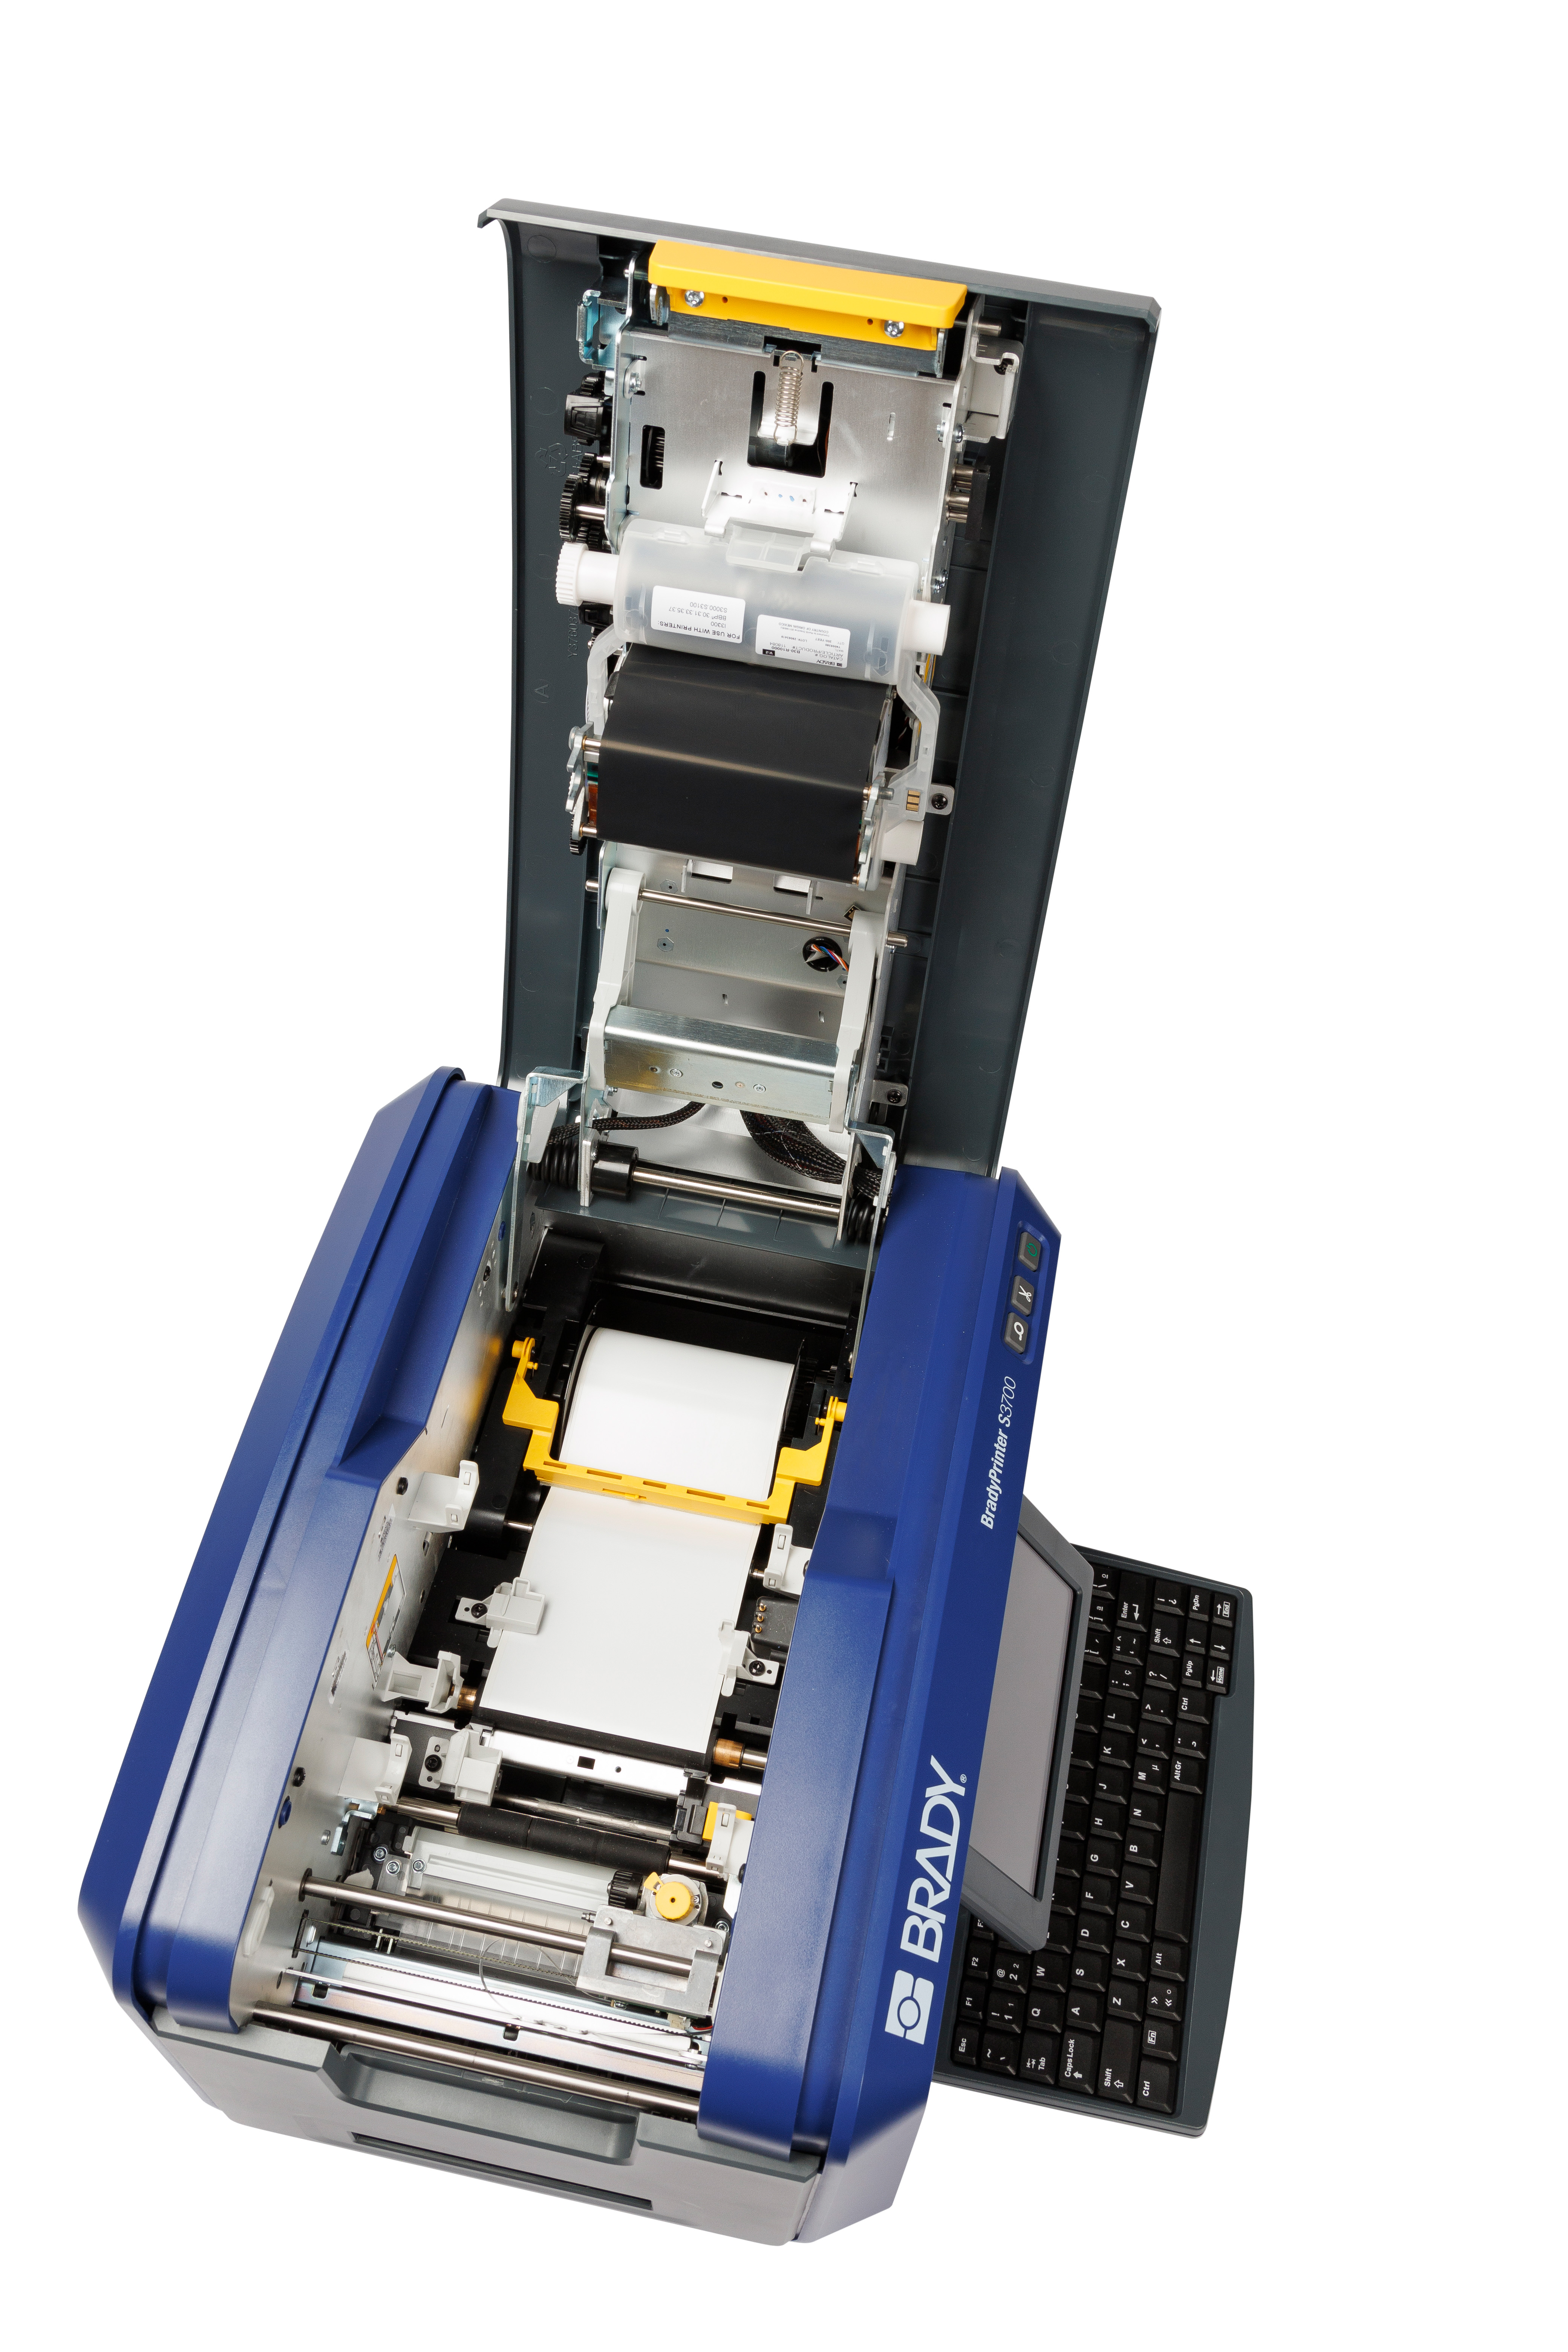 BRADY S3700 Multicolour & Cut Schilder- und Etikettendrucker mit QWERTZ-Tastatur